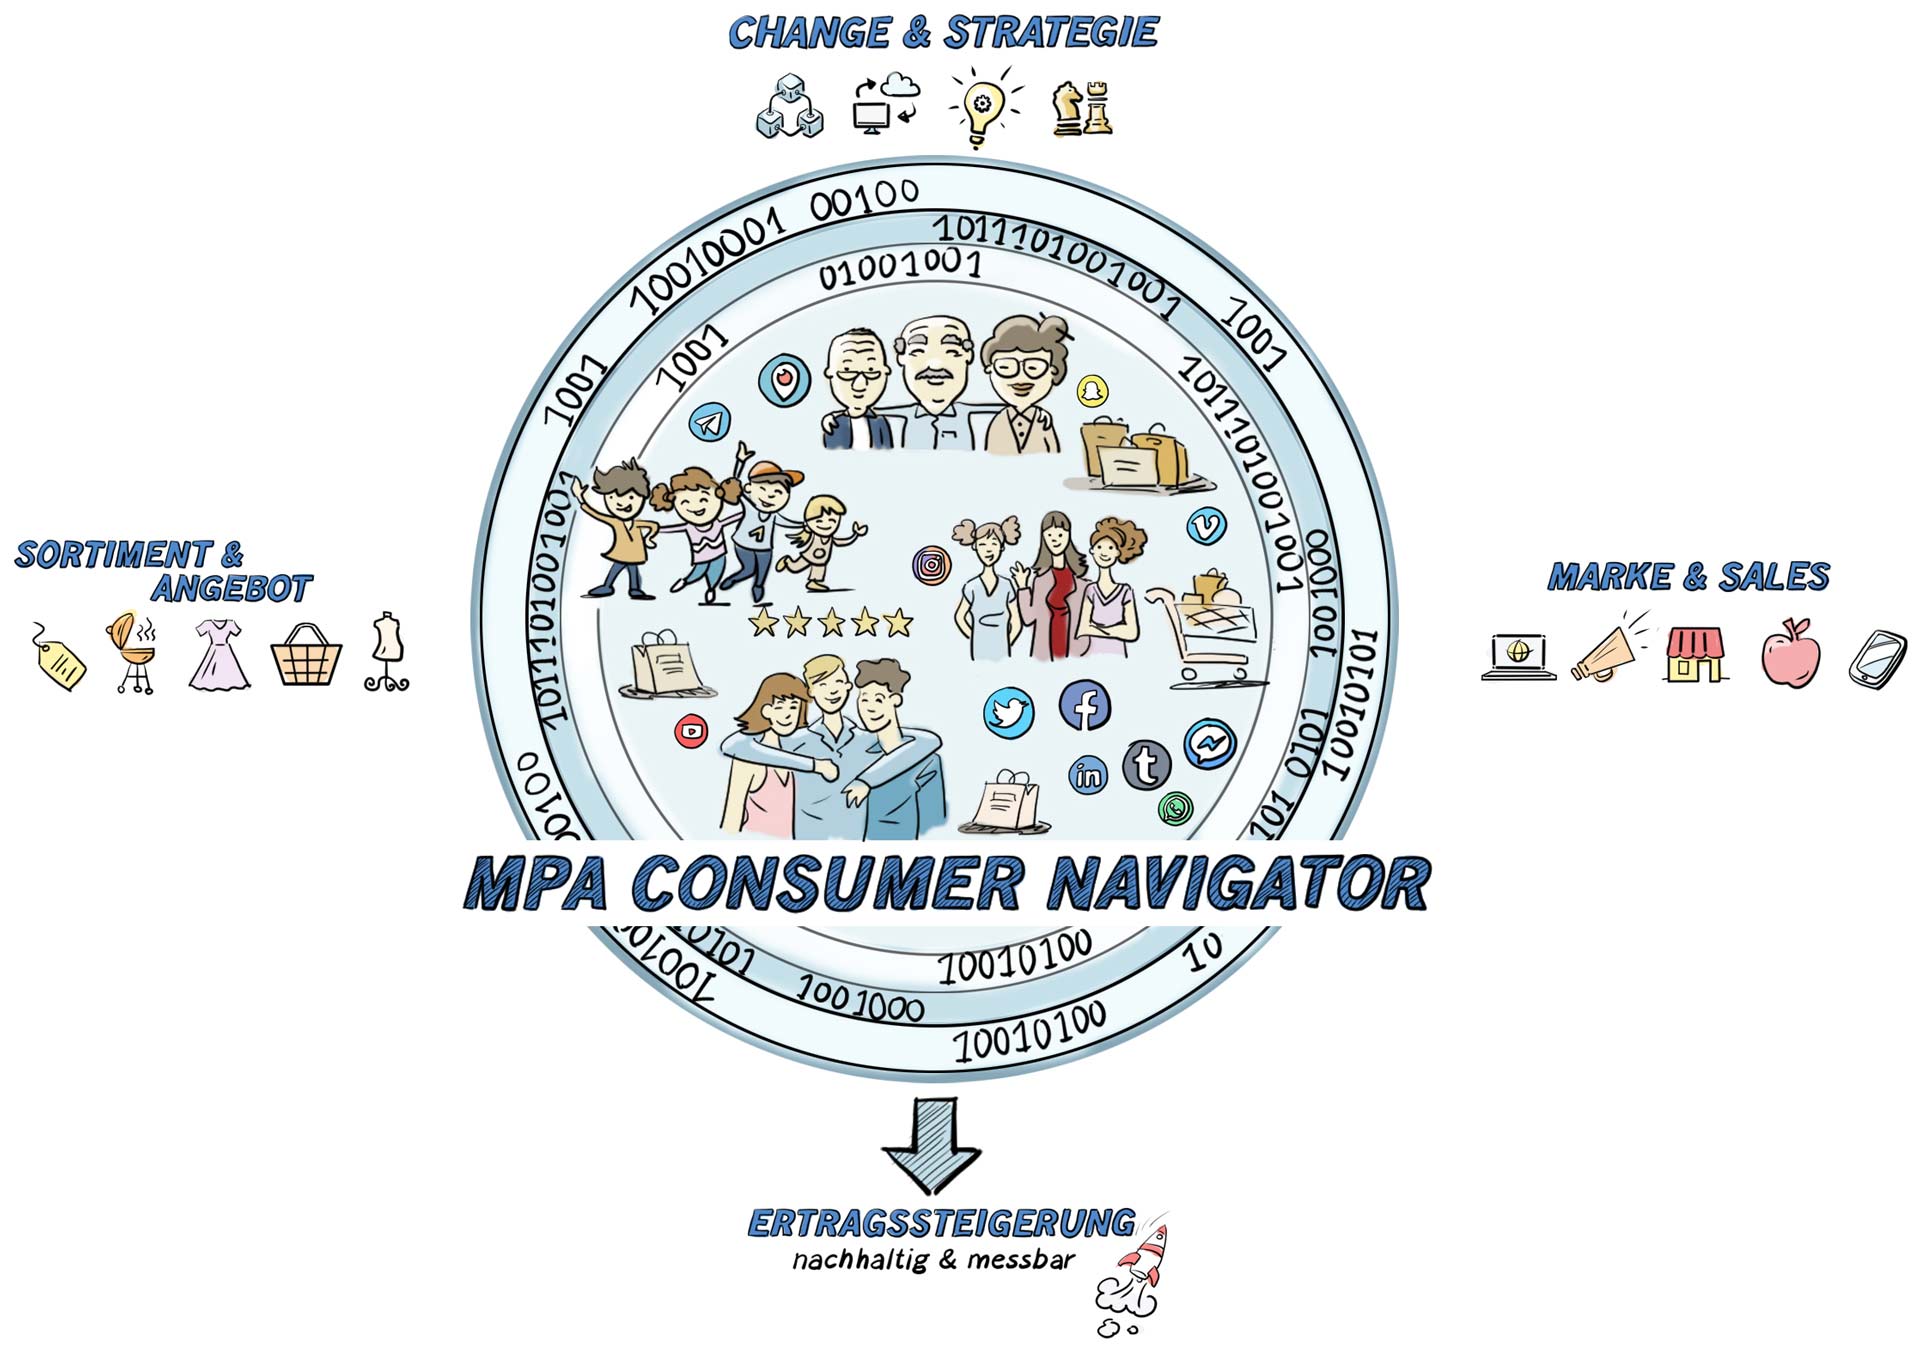 Matthias Peters Associates (MPA) Consumer Navigator kundenzentriert und datenbasiert